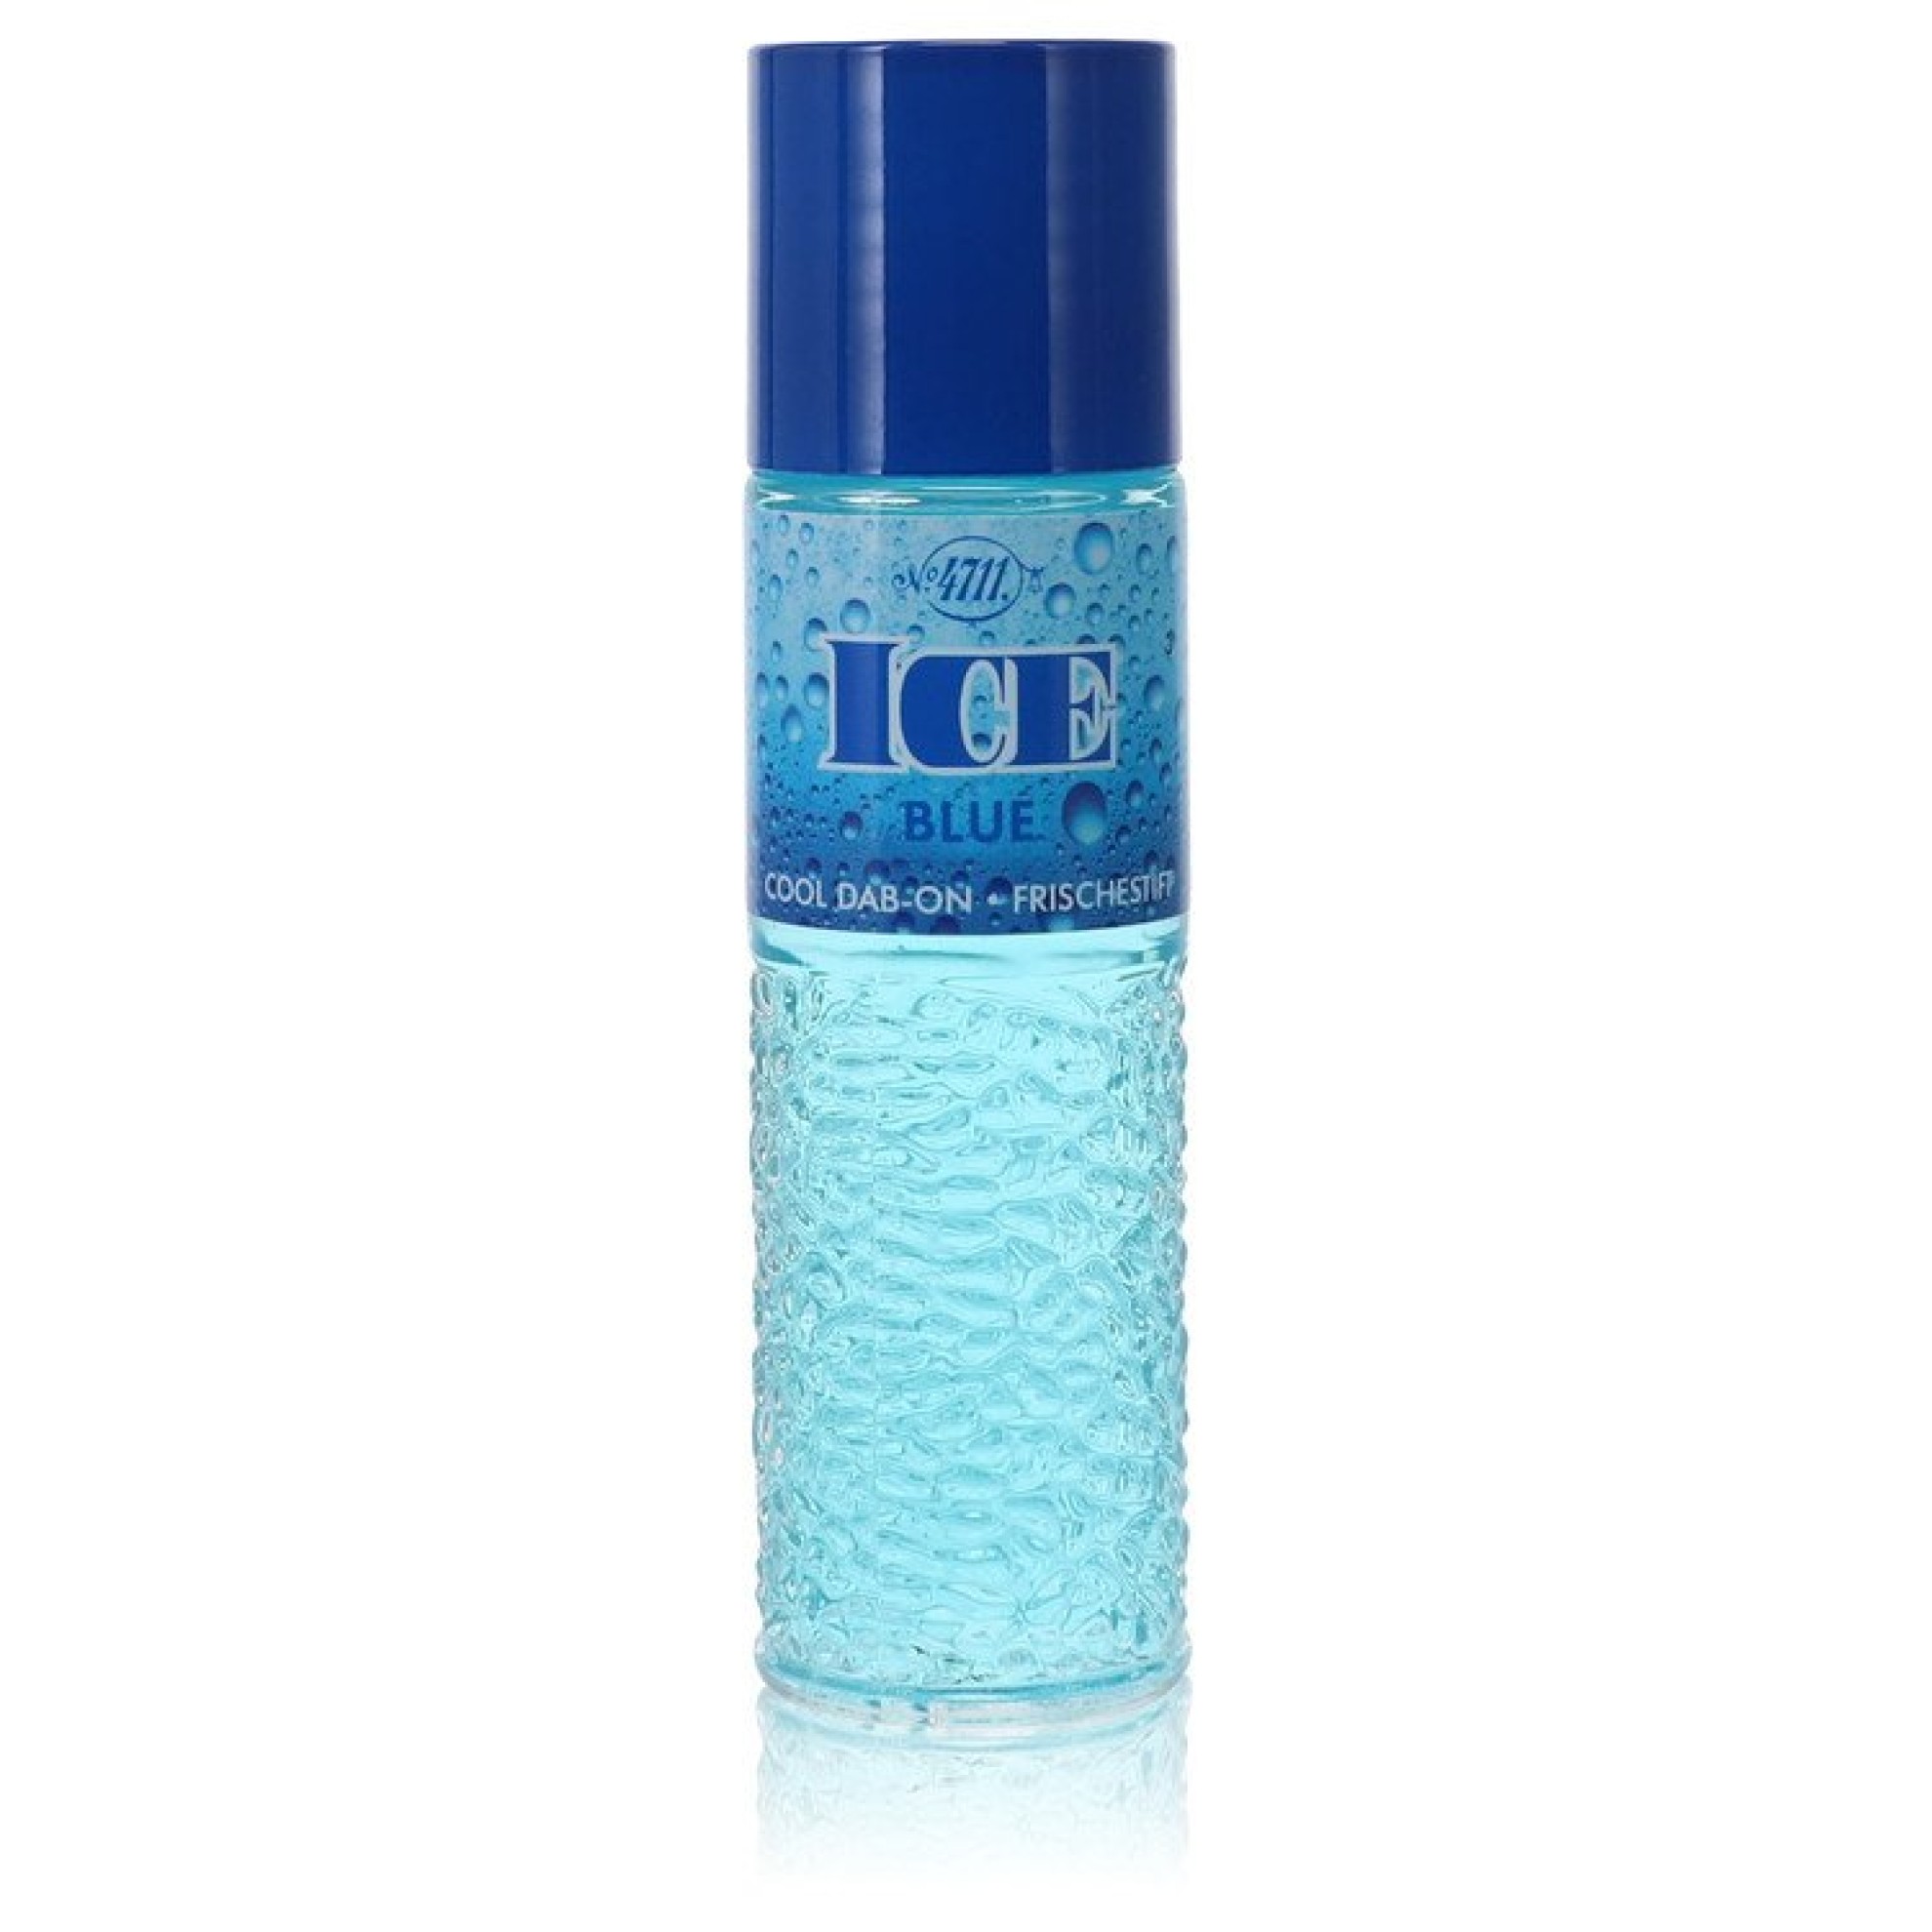 Image of 4711 Ice Blue Cologne Dab-on 41 ml von XXL-Parfum.ch